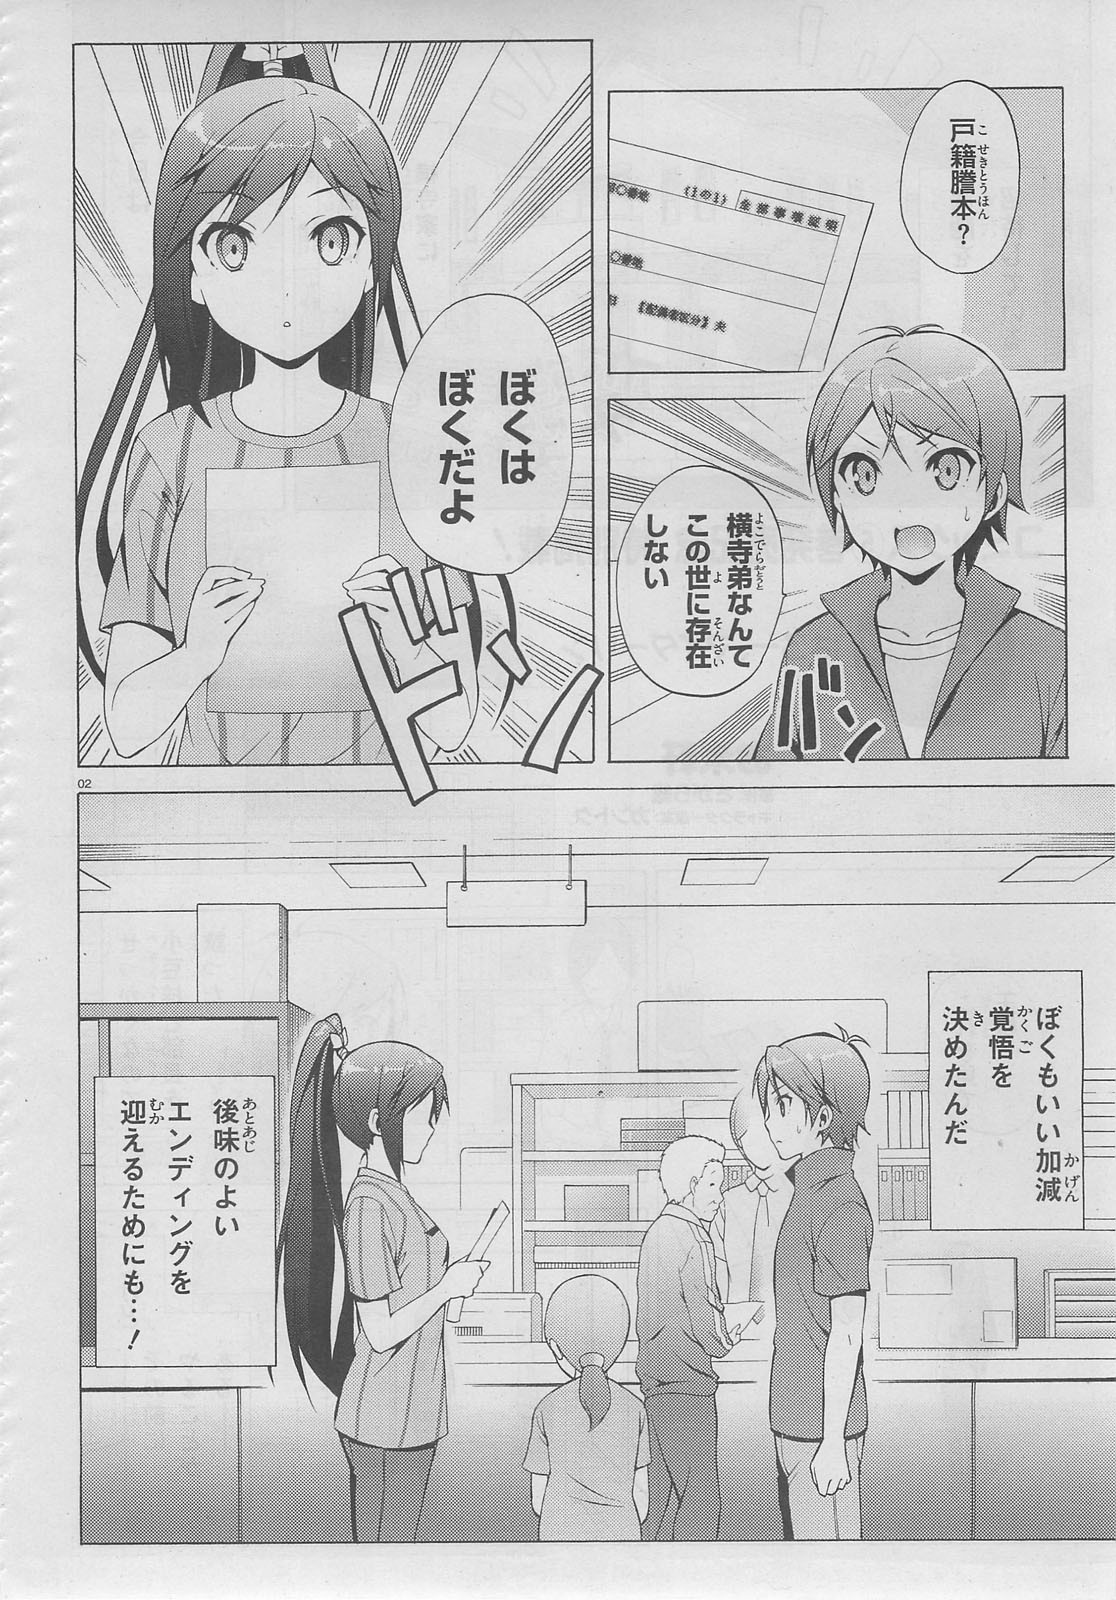 Hentai Ouji to Warawanai Neko - Chapter Epilogue - Page 2